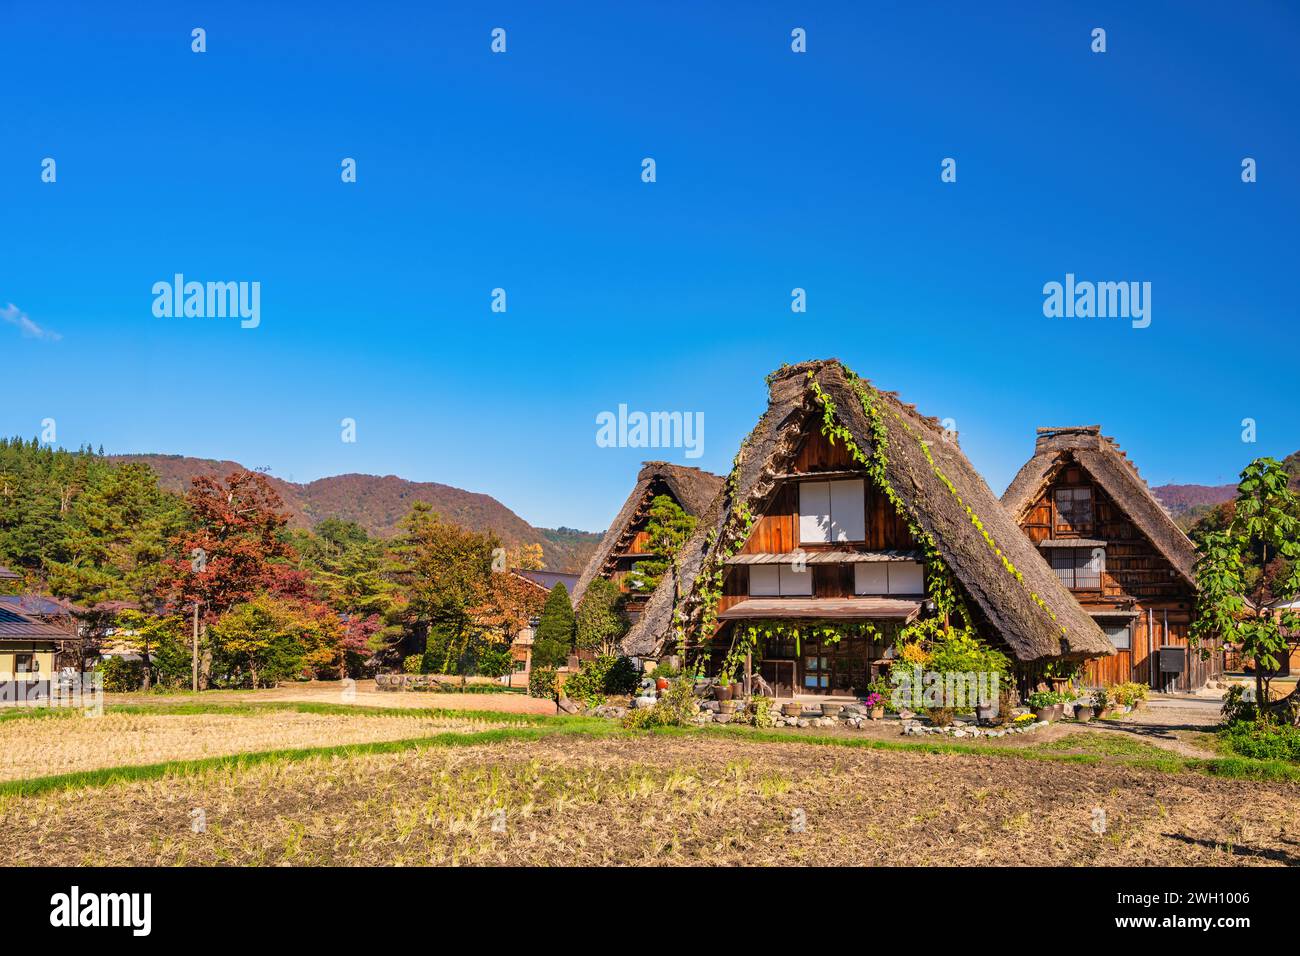 Village de Shirakawago Gifu Japon, Maison Gassho traditionnelle japonaise historique au village de Shirakawa en saison de feuillage d'automne Banque D'Images